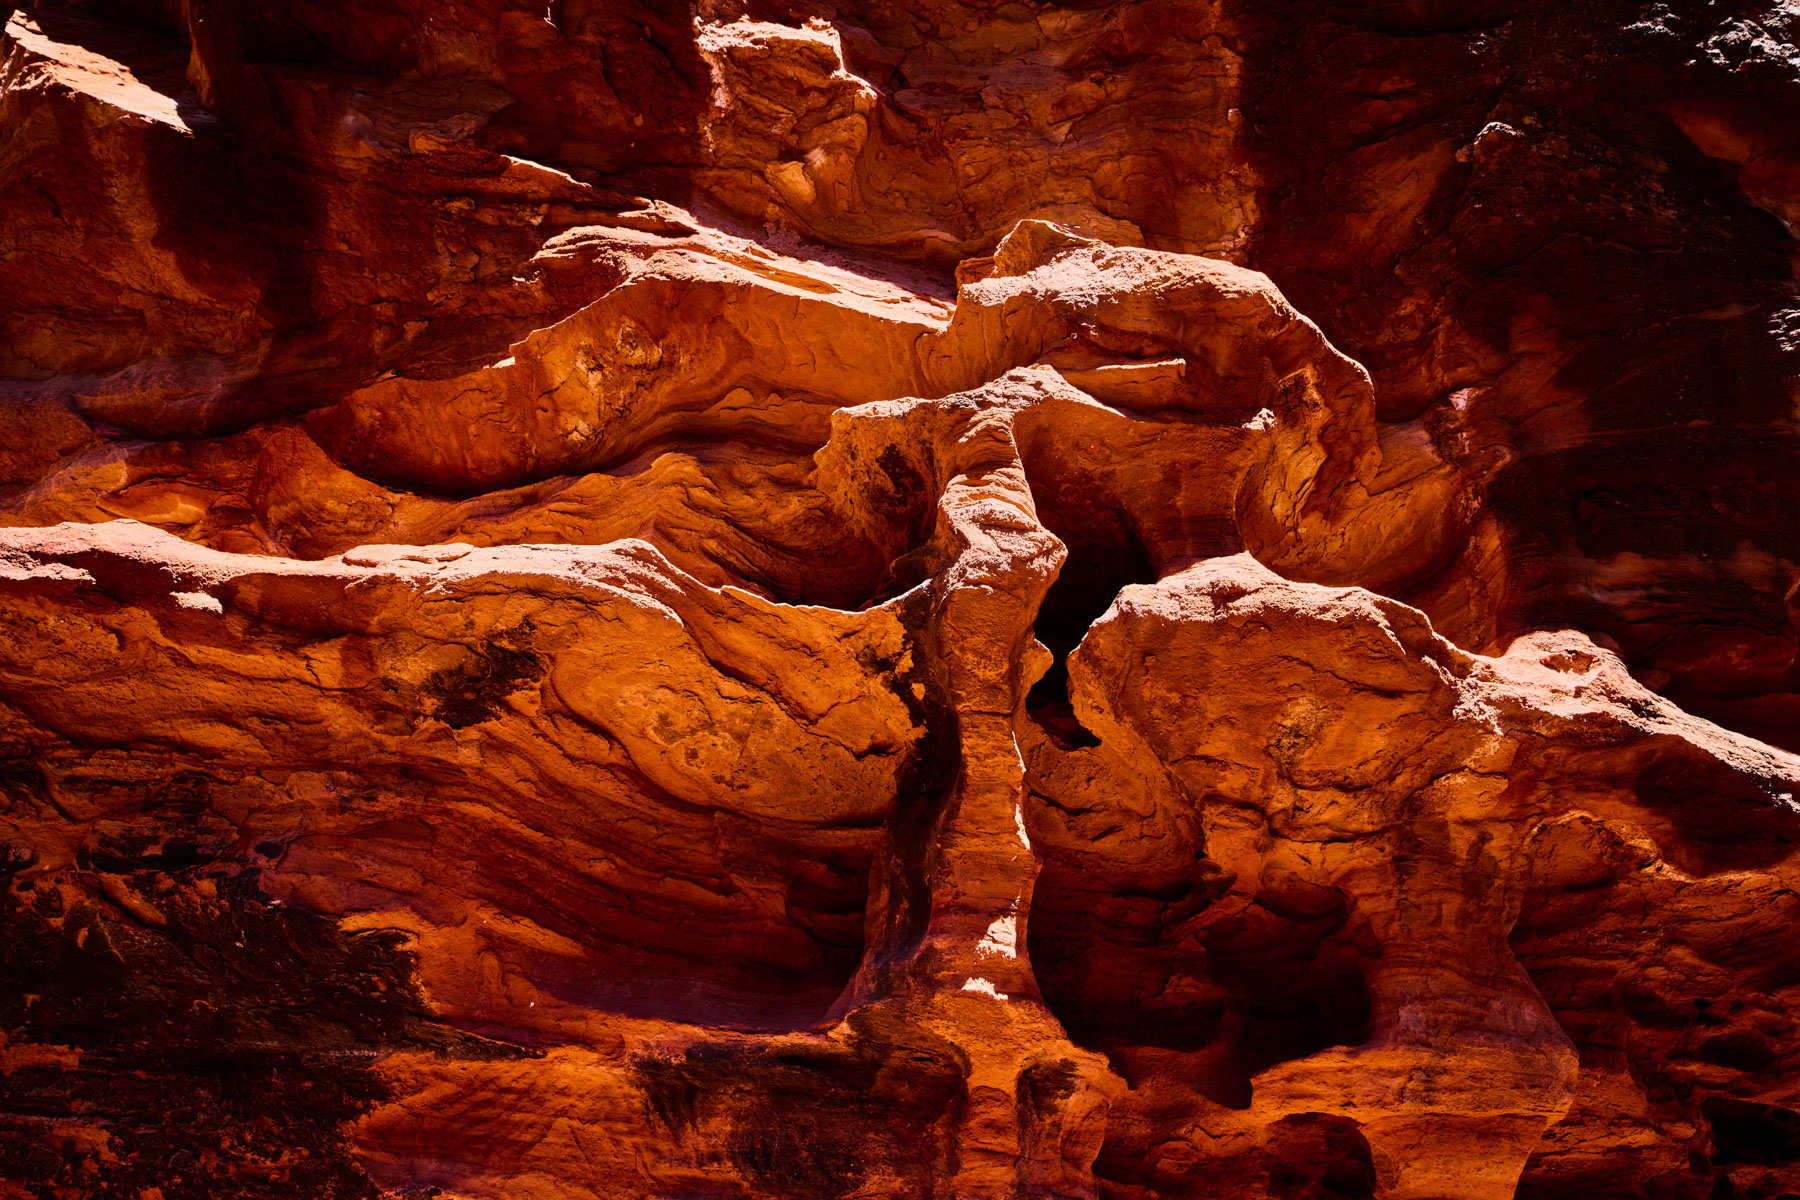 Eroded abstracts in Fay Canyon near Sedona Arizona by Andy Batt